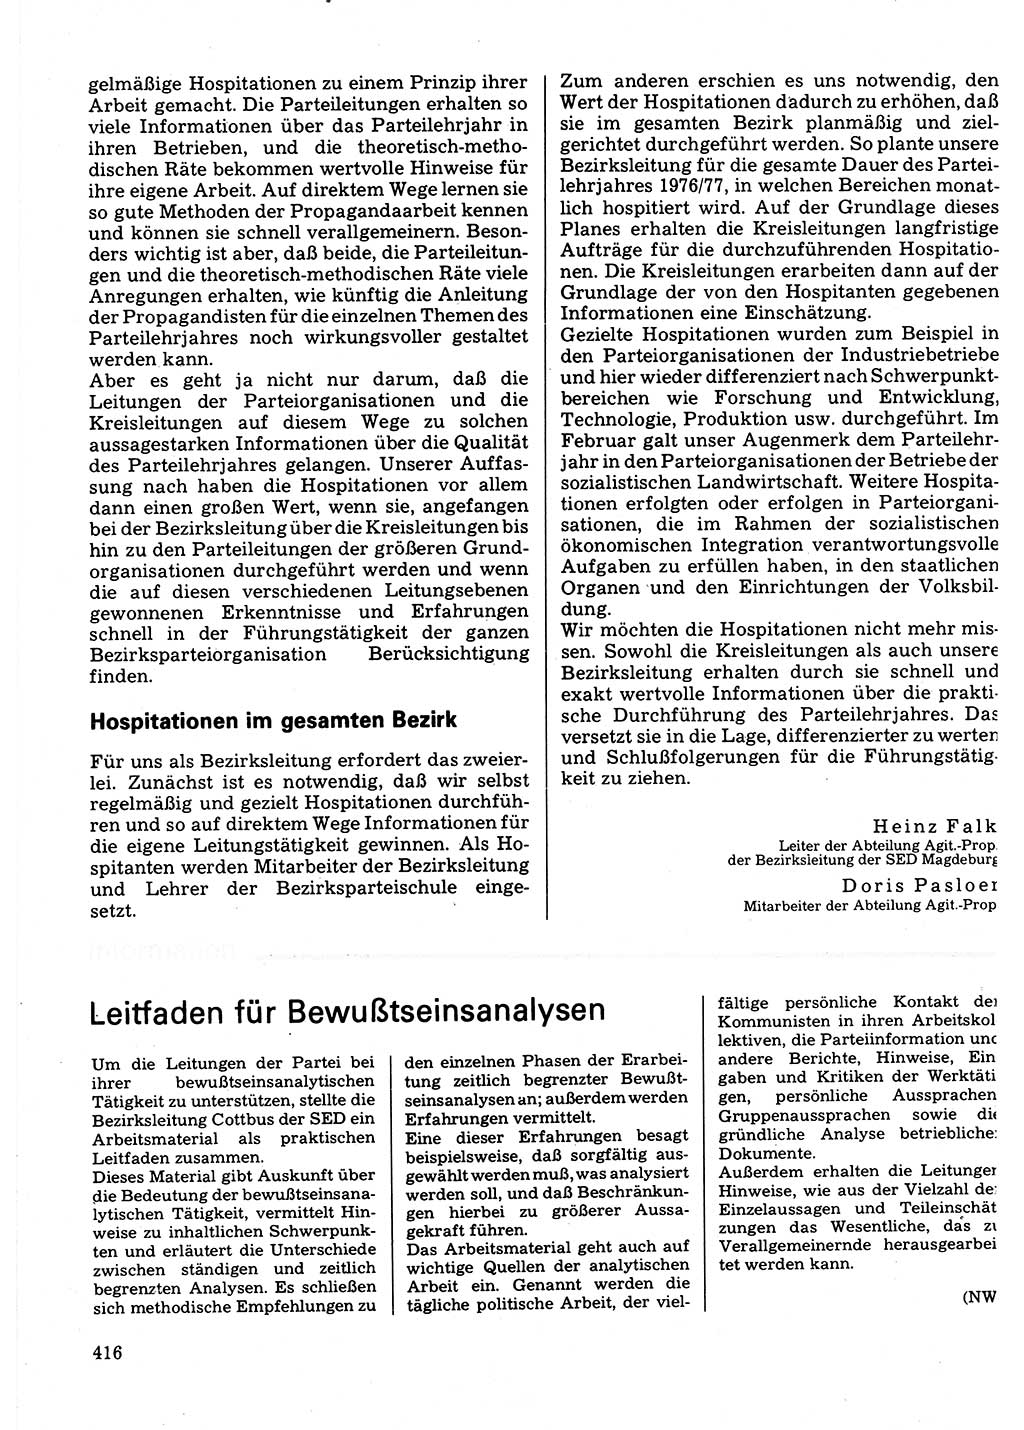 Neuer Weg (NW), Organ des Zentralkomitees (ZK) der SED (Sozialistische Einheitspartei Deutschlands) für Fragen des Parteilebens, 32. Jahrgang [Deutsche Demokratische Republik (DDR)] 1977, Seite 416 (NW ZK SED DDR 1977, S. 416)